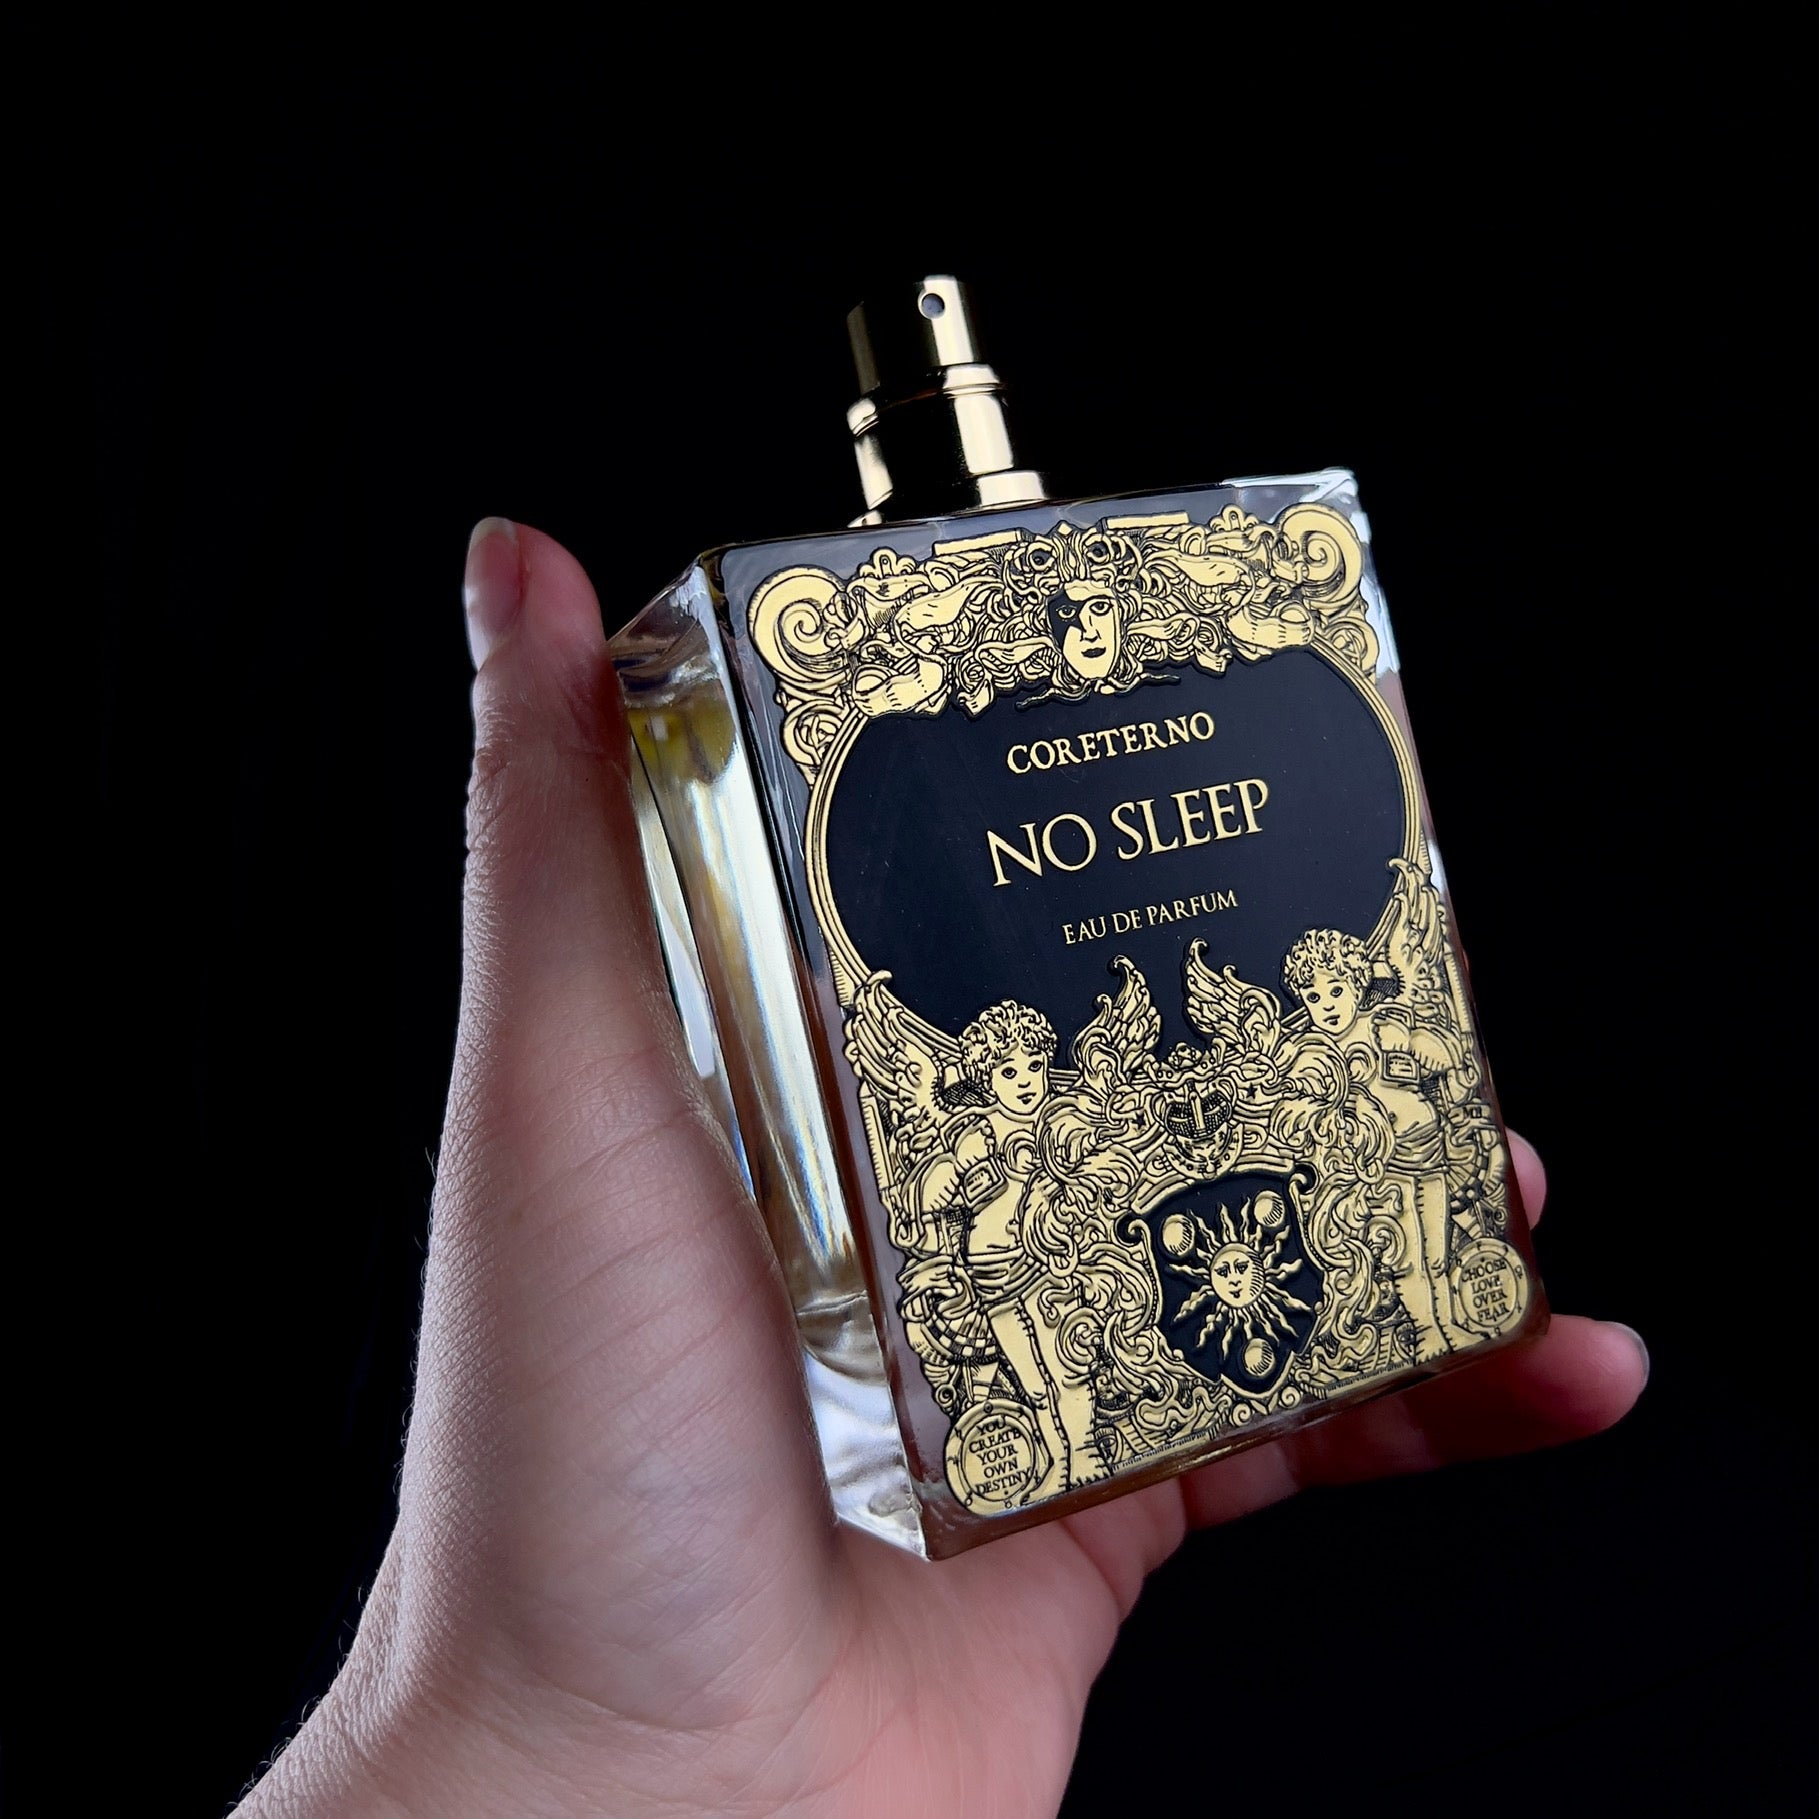 No Sleep Parfum shown in hand